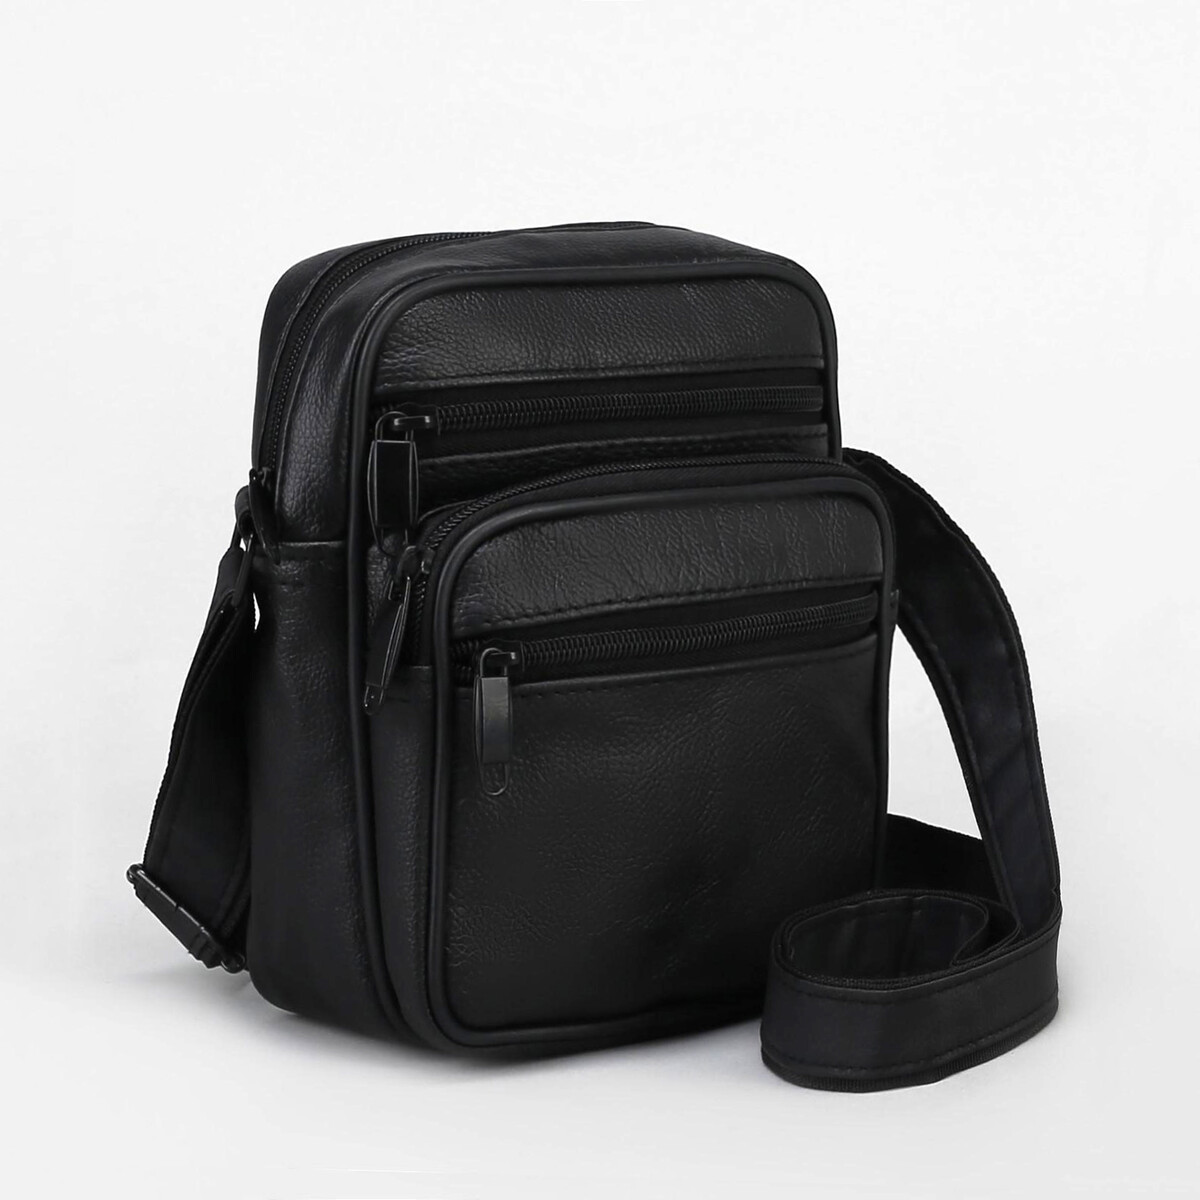 Сумка мужская на молниях, длинный ремень, цвет черный сумка мужская регулируемый ремень